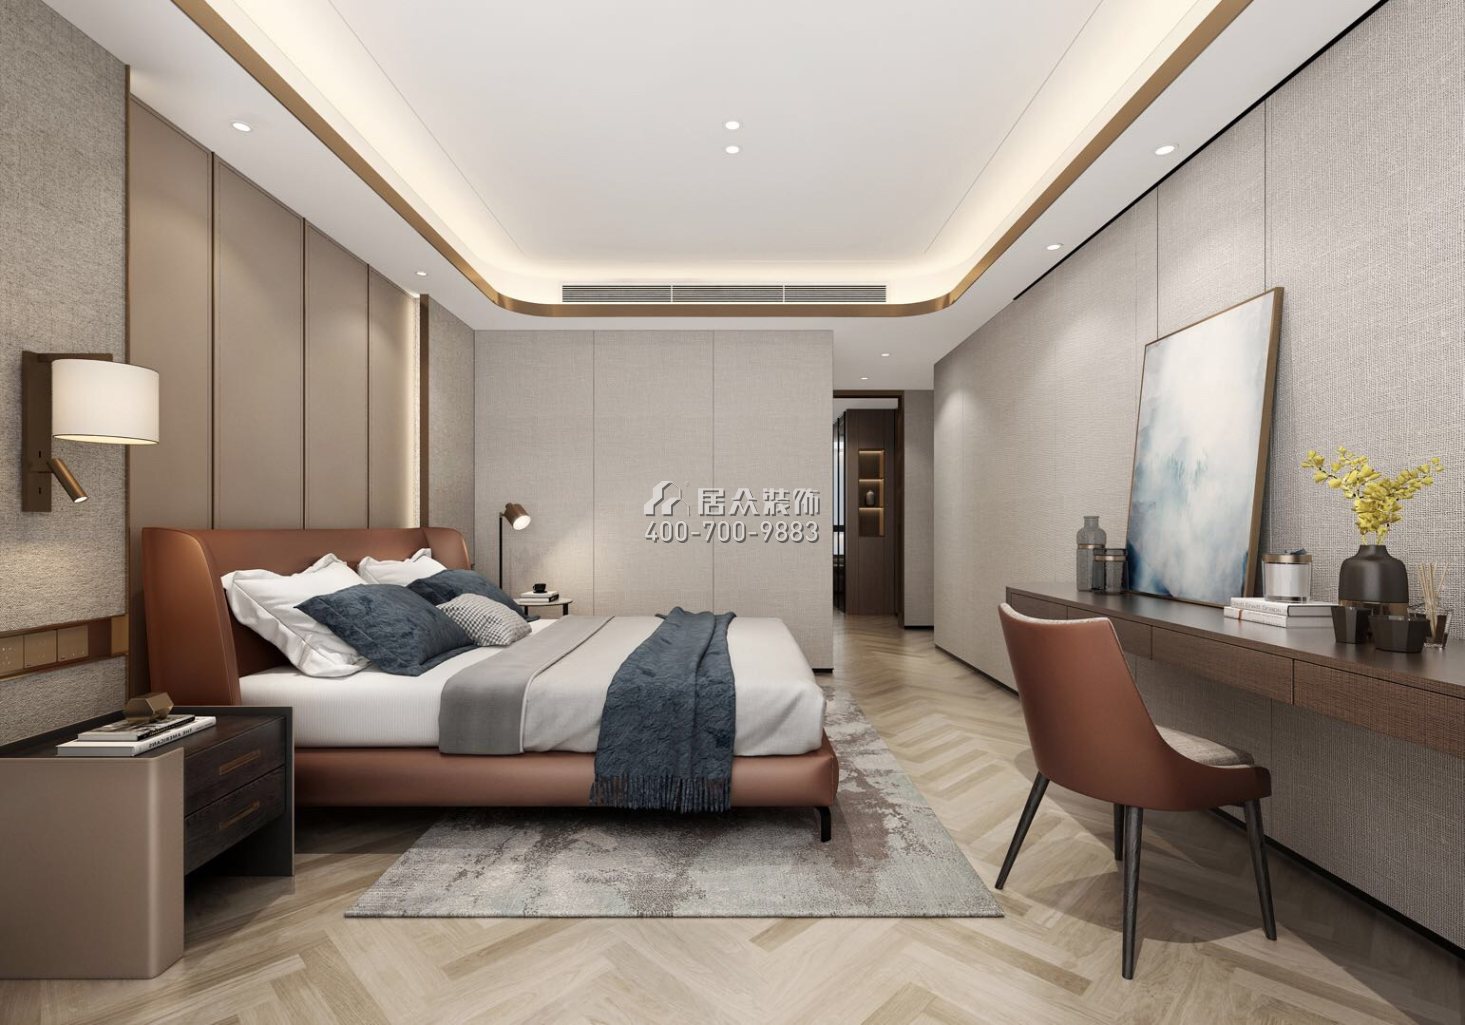 壹方中心148平方米现代简约风格平层户型卧室装修效果图